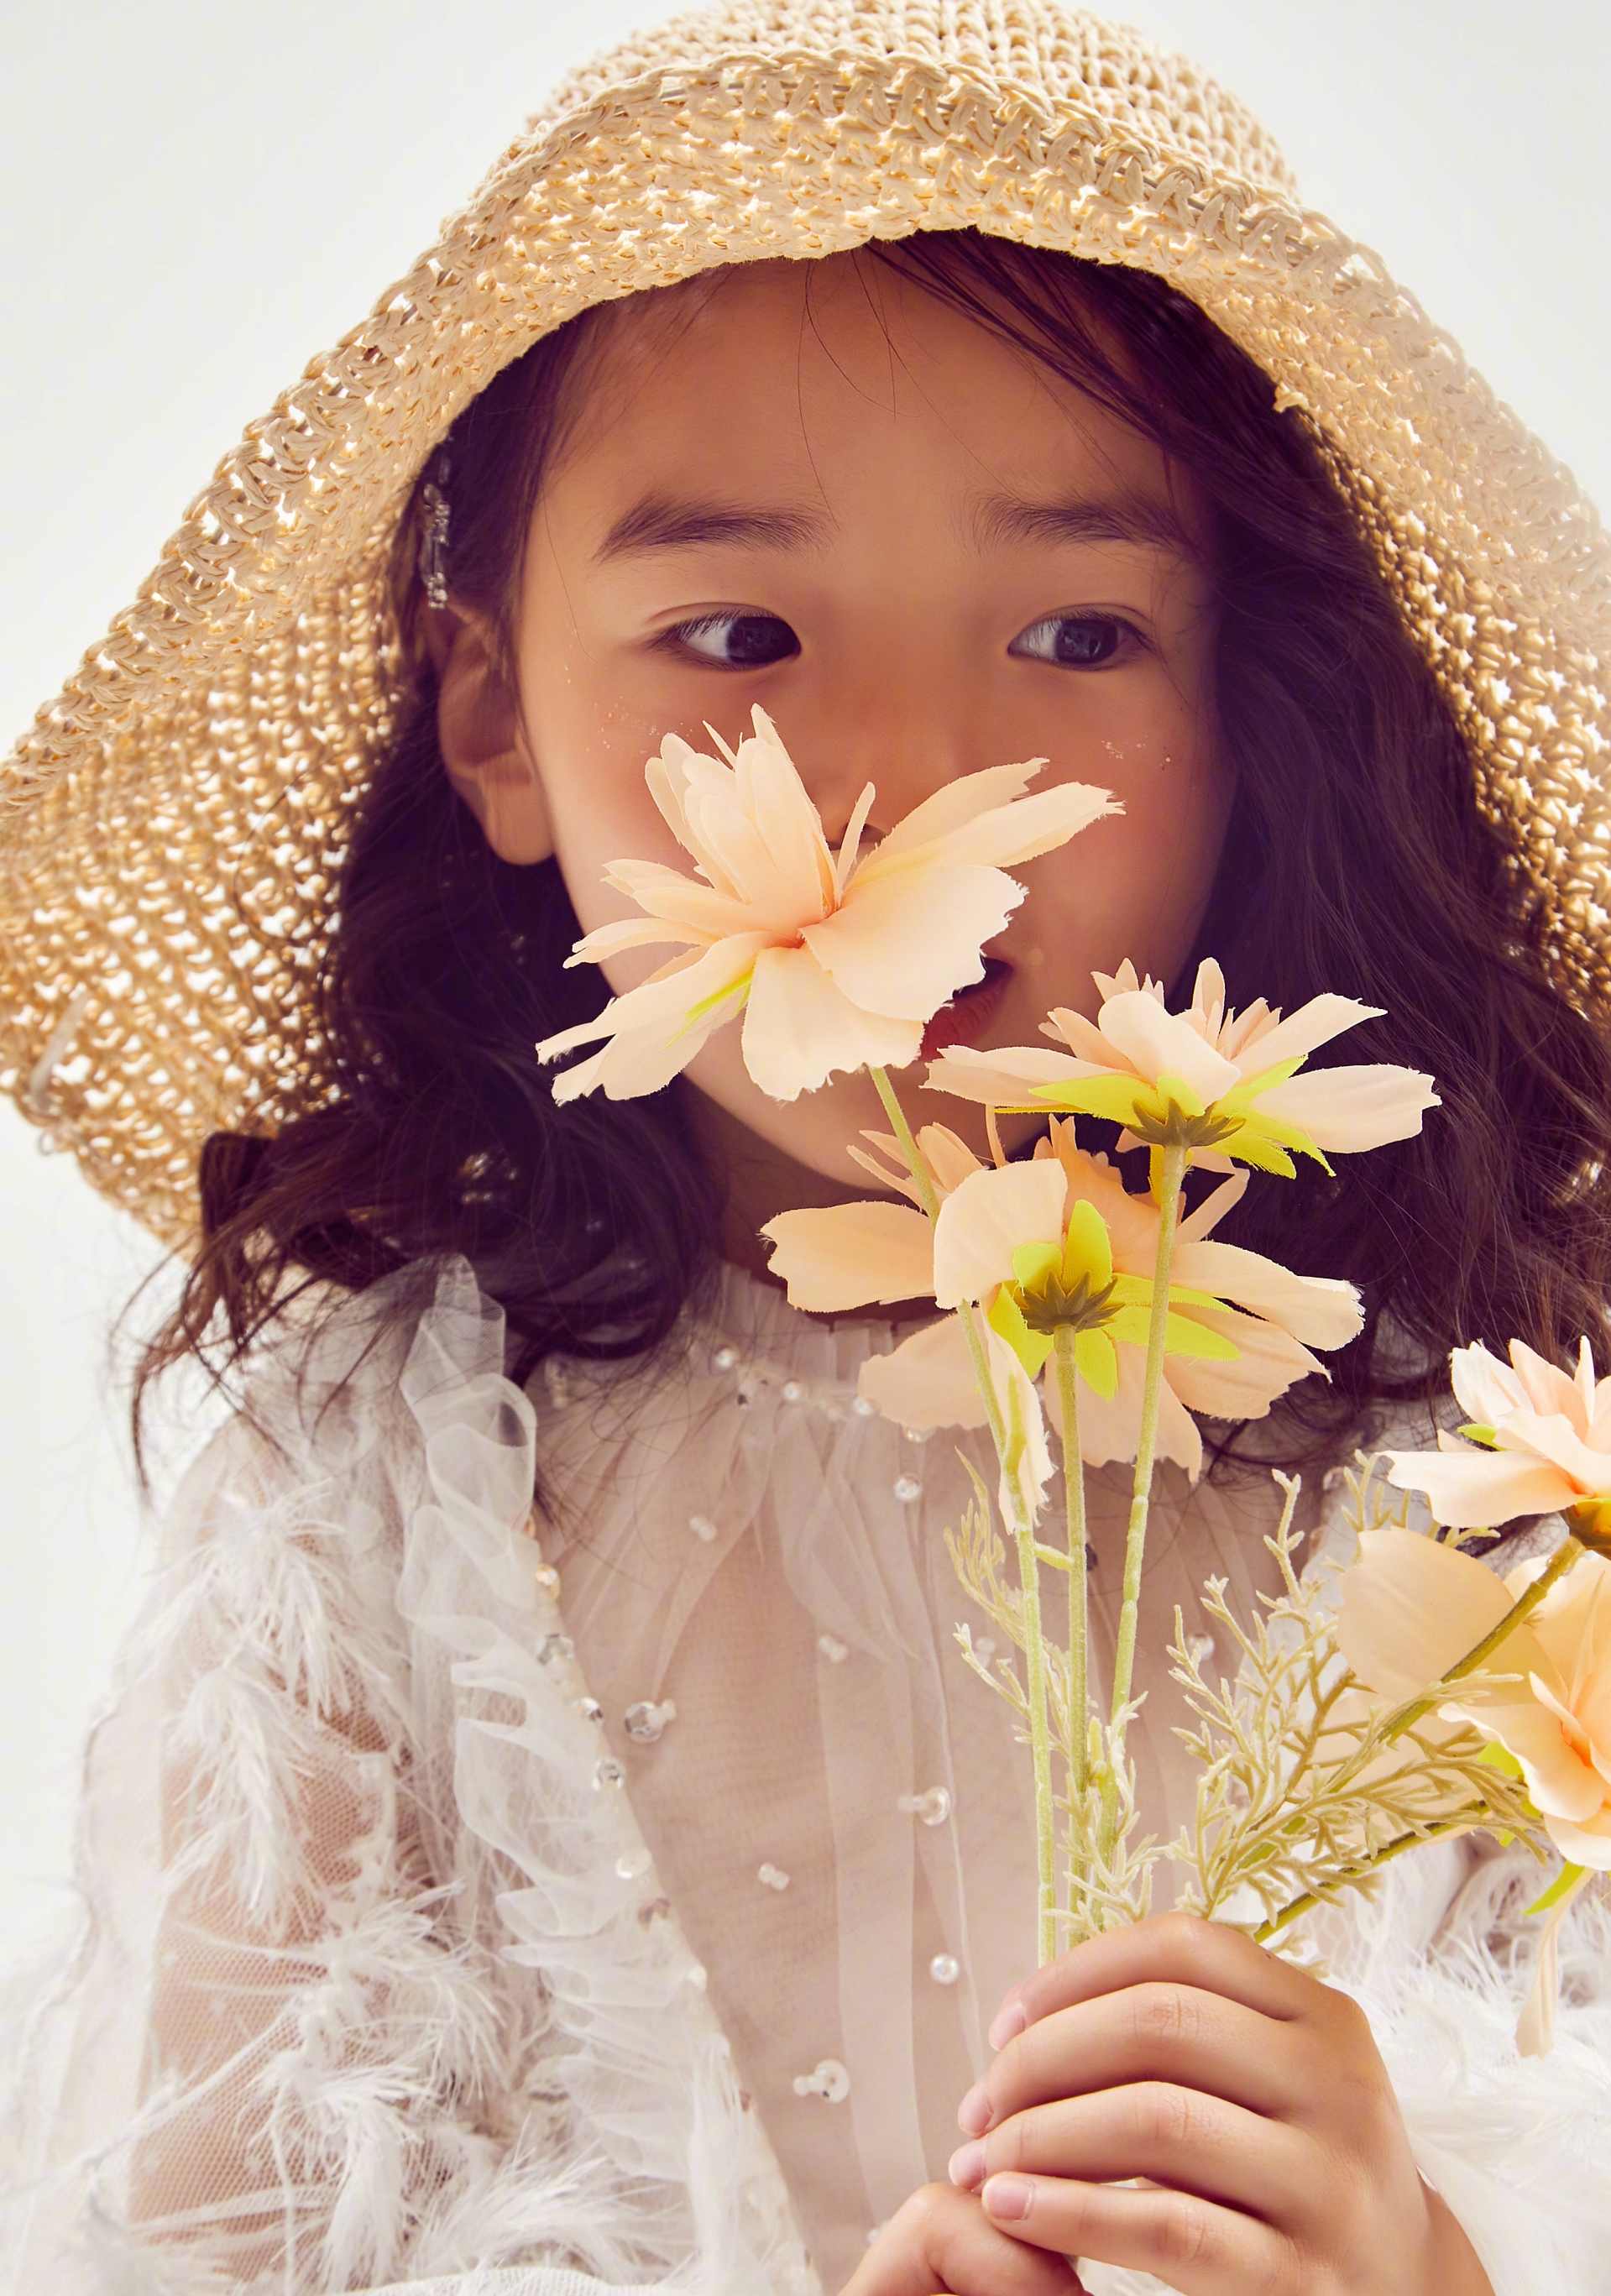 Con gái 'Điêu Thuyền' Đổng Tuyền mới 5 tuổi đã xinh tựa thiên thần, thả nhẹ bộ ảnh cũng gây sốt Weibo 3